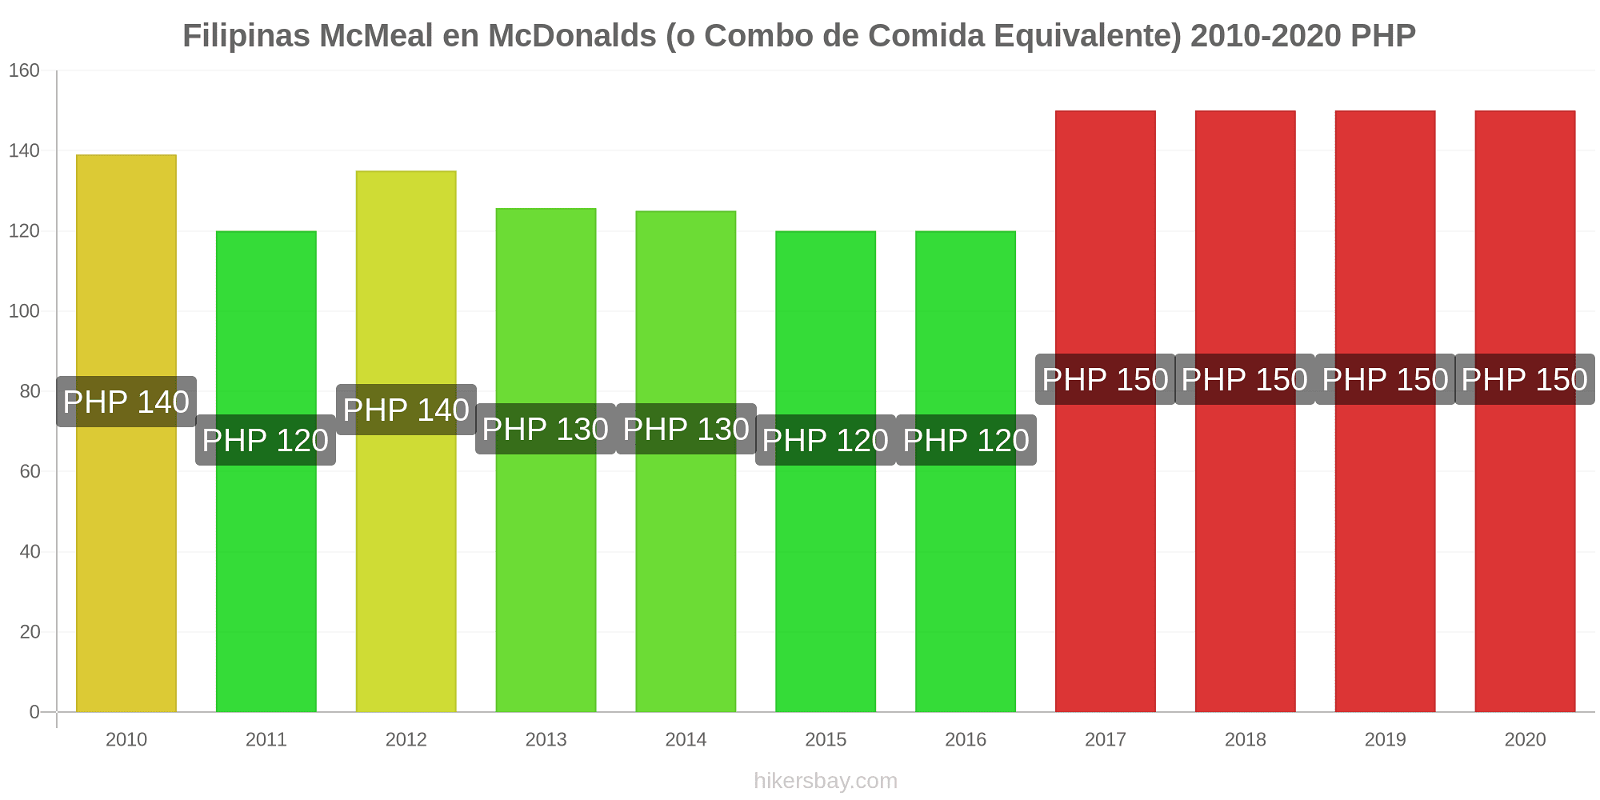 Filipinas cambios de precios McMeal en McDonalds (o menú equivalente) hikersbay.com